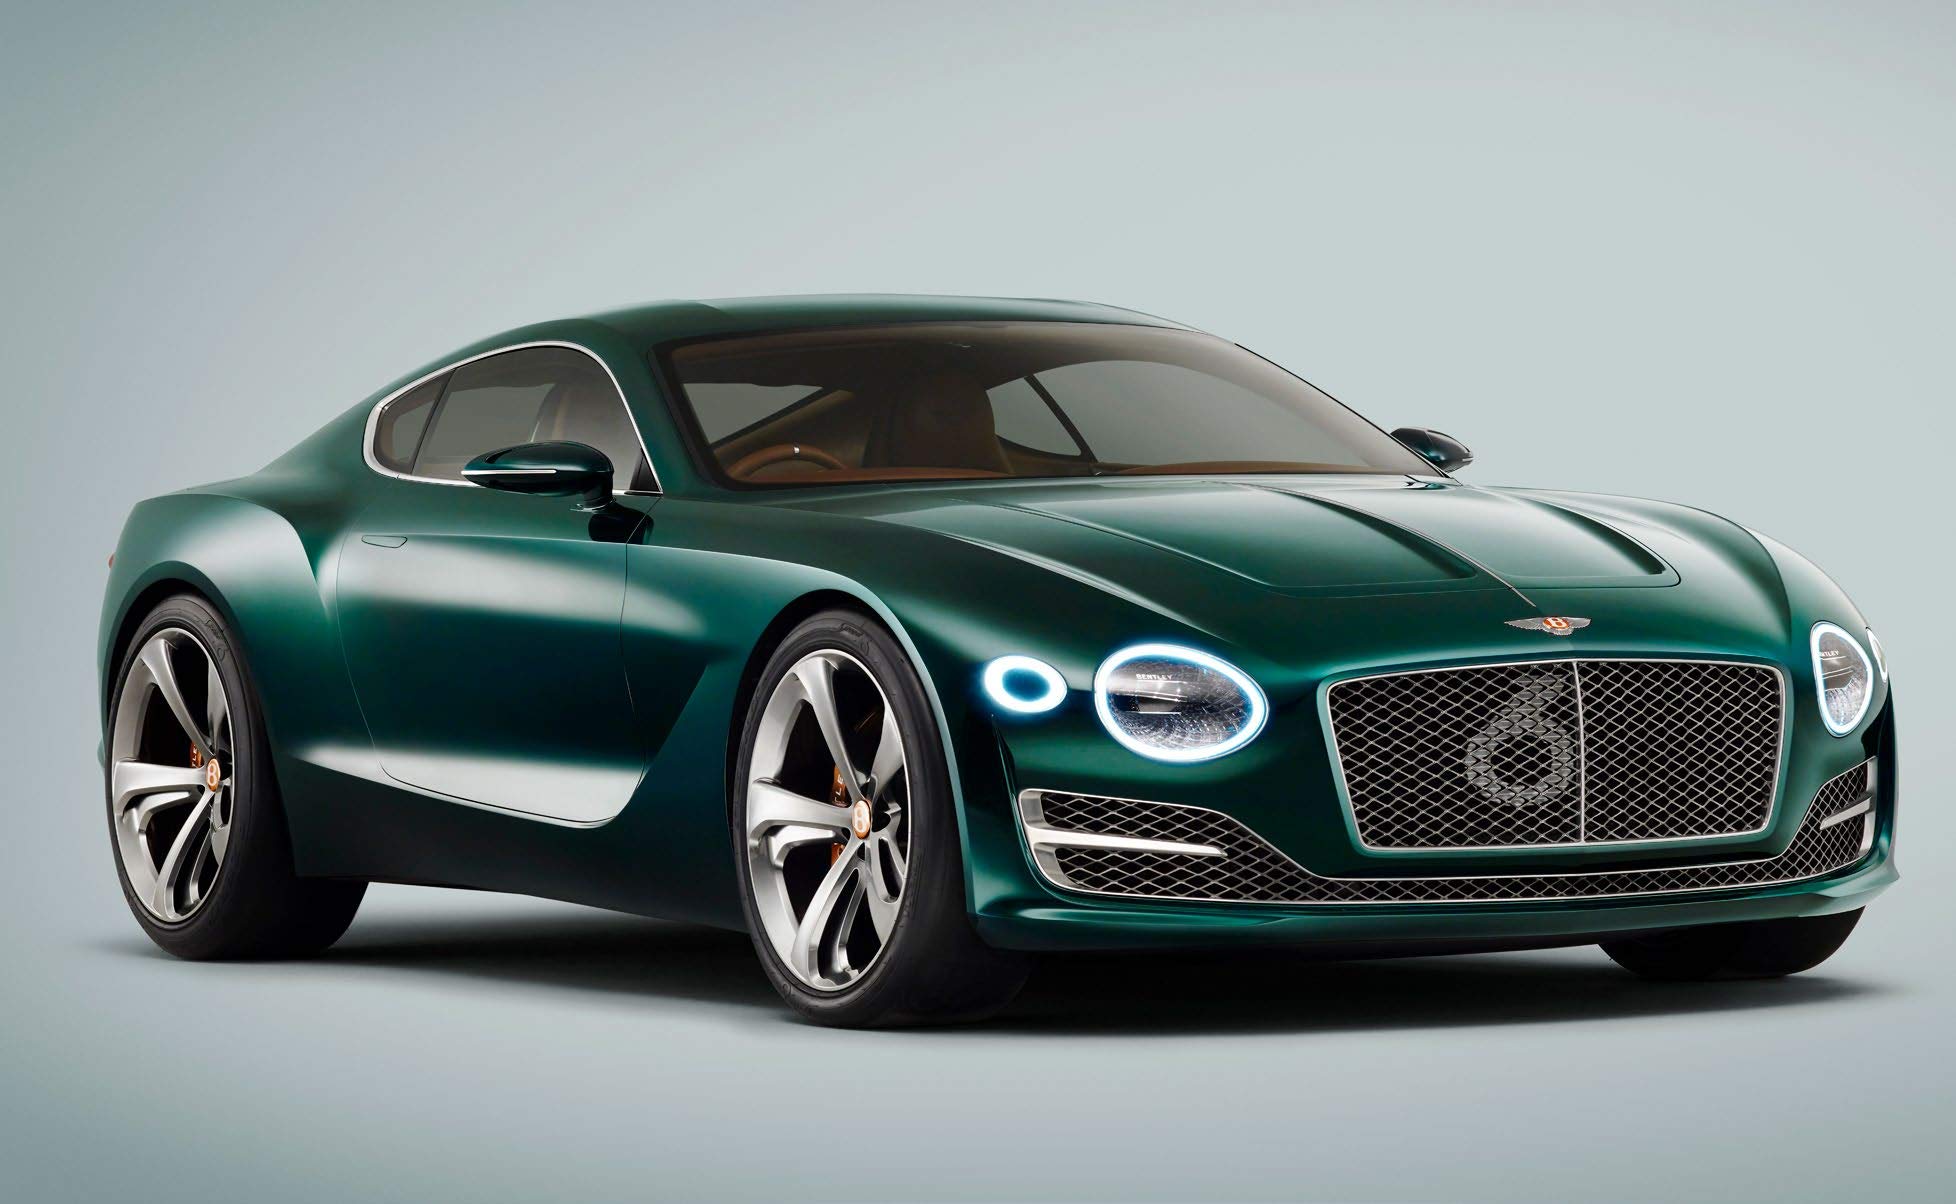 100 Years of Bentley